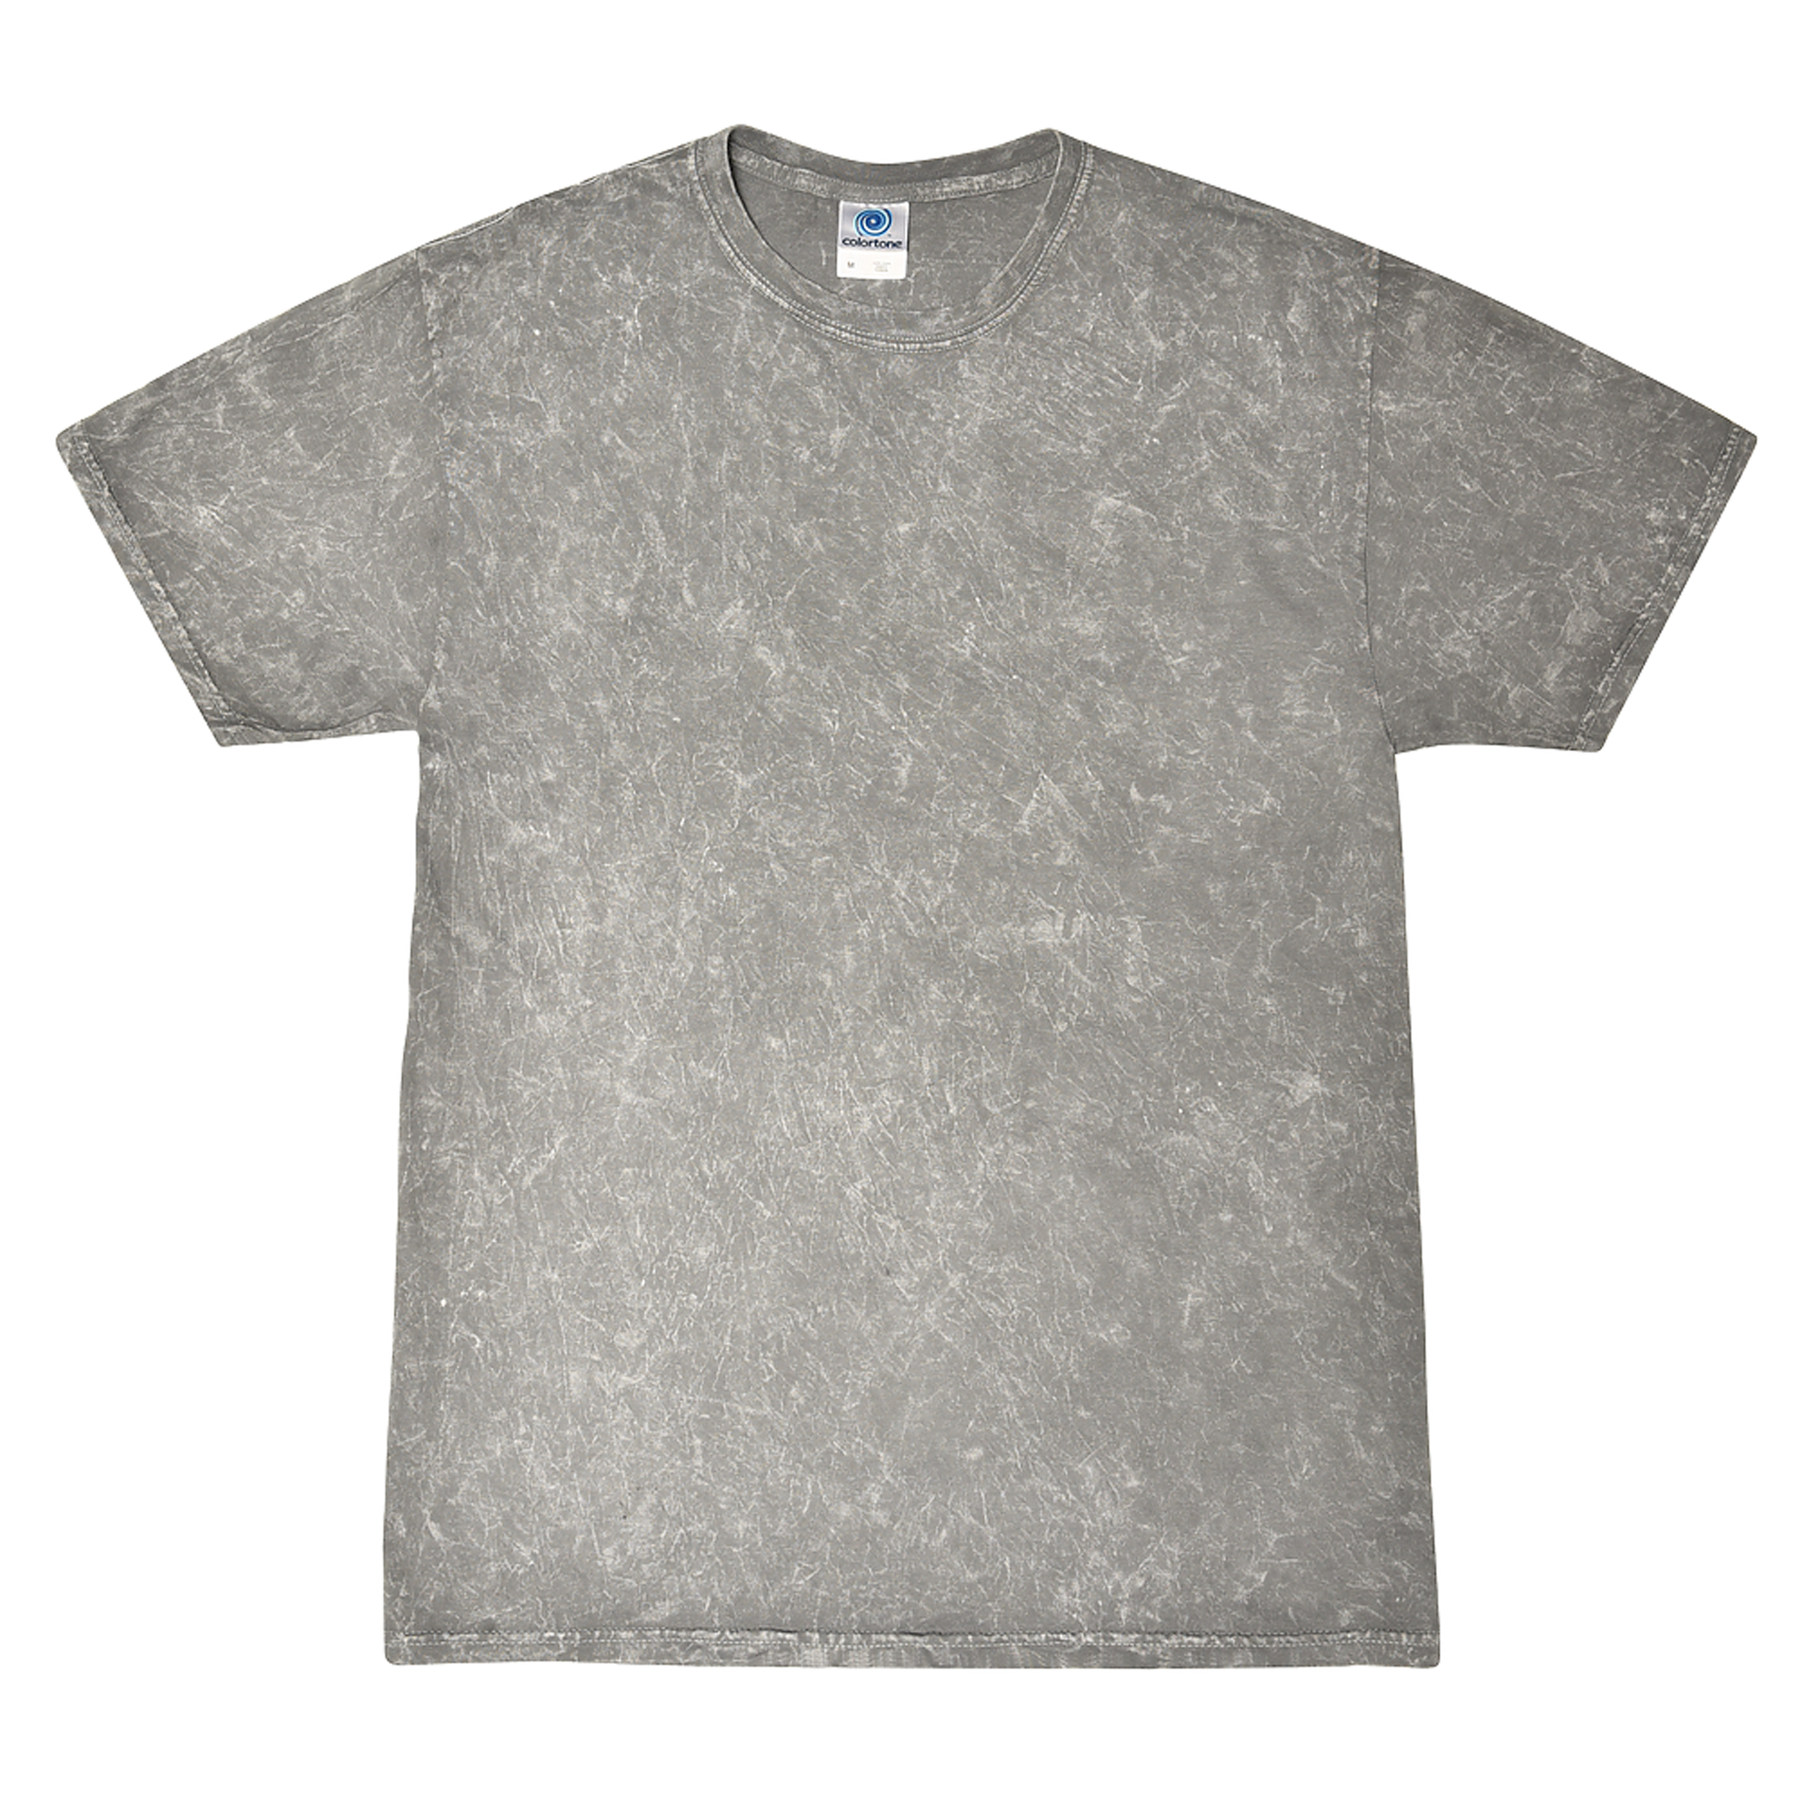 COLORTONE 1300 - Unisex Mineral Wash T-Shirt – BSP